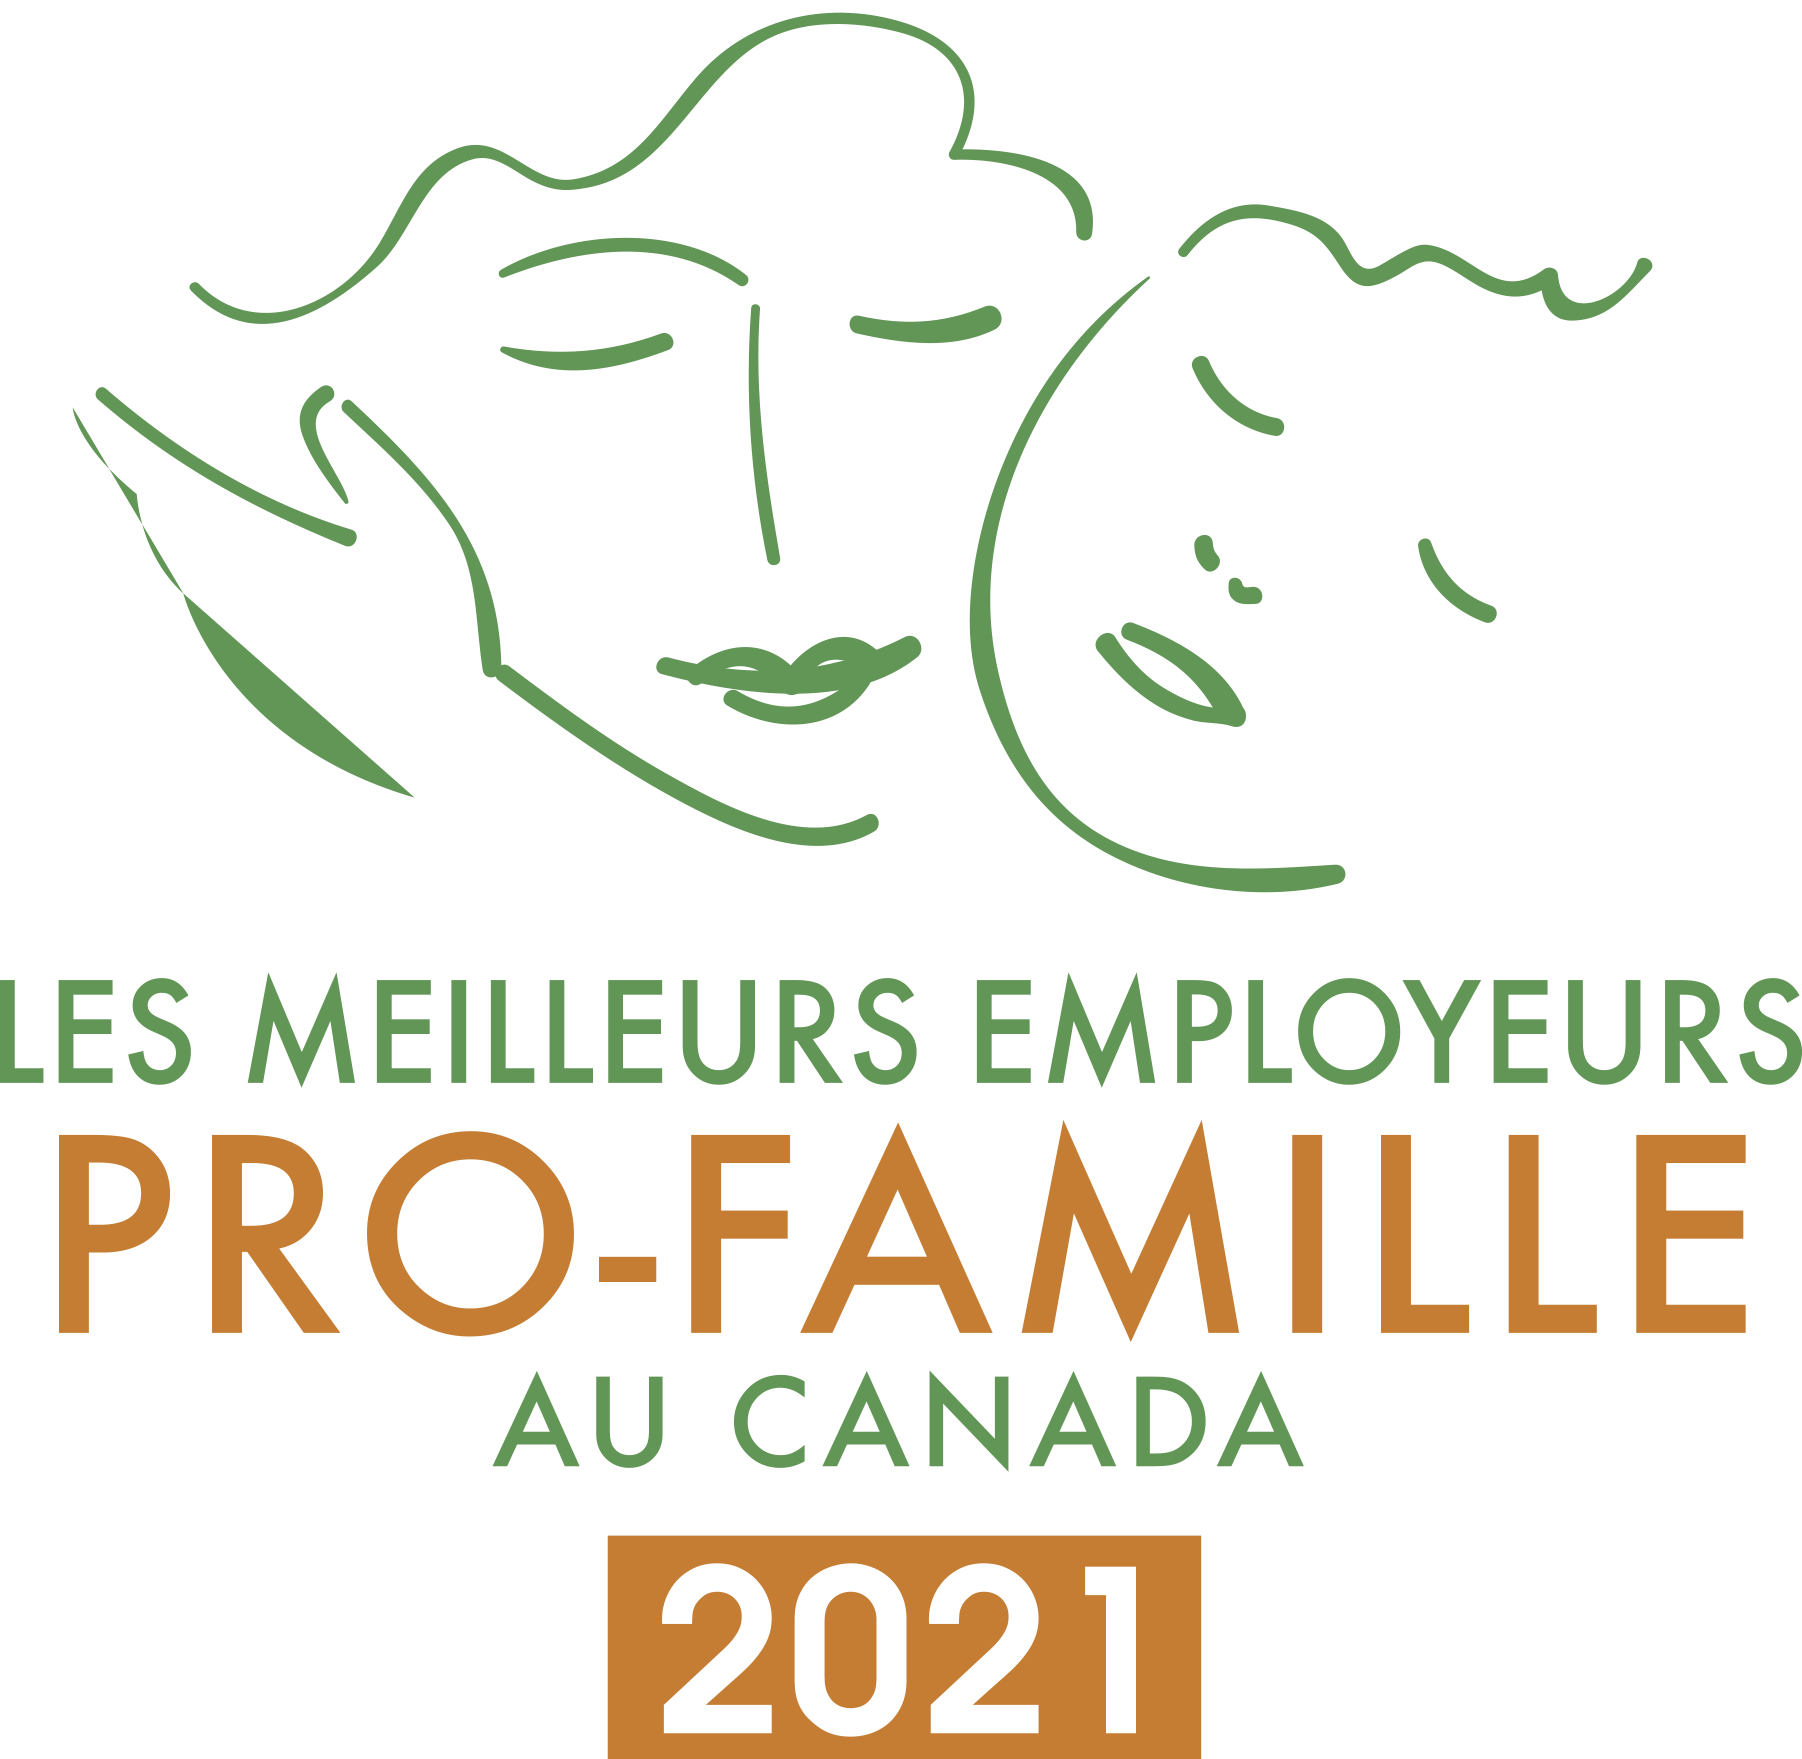 Les meilleurs employeurs pro-famille au Canada (2021)